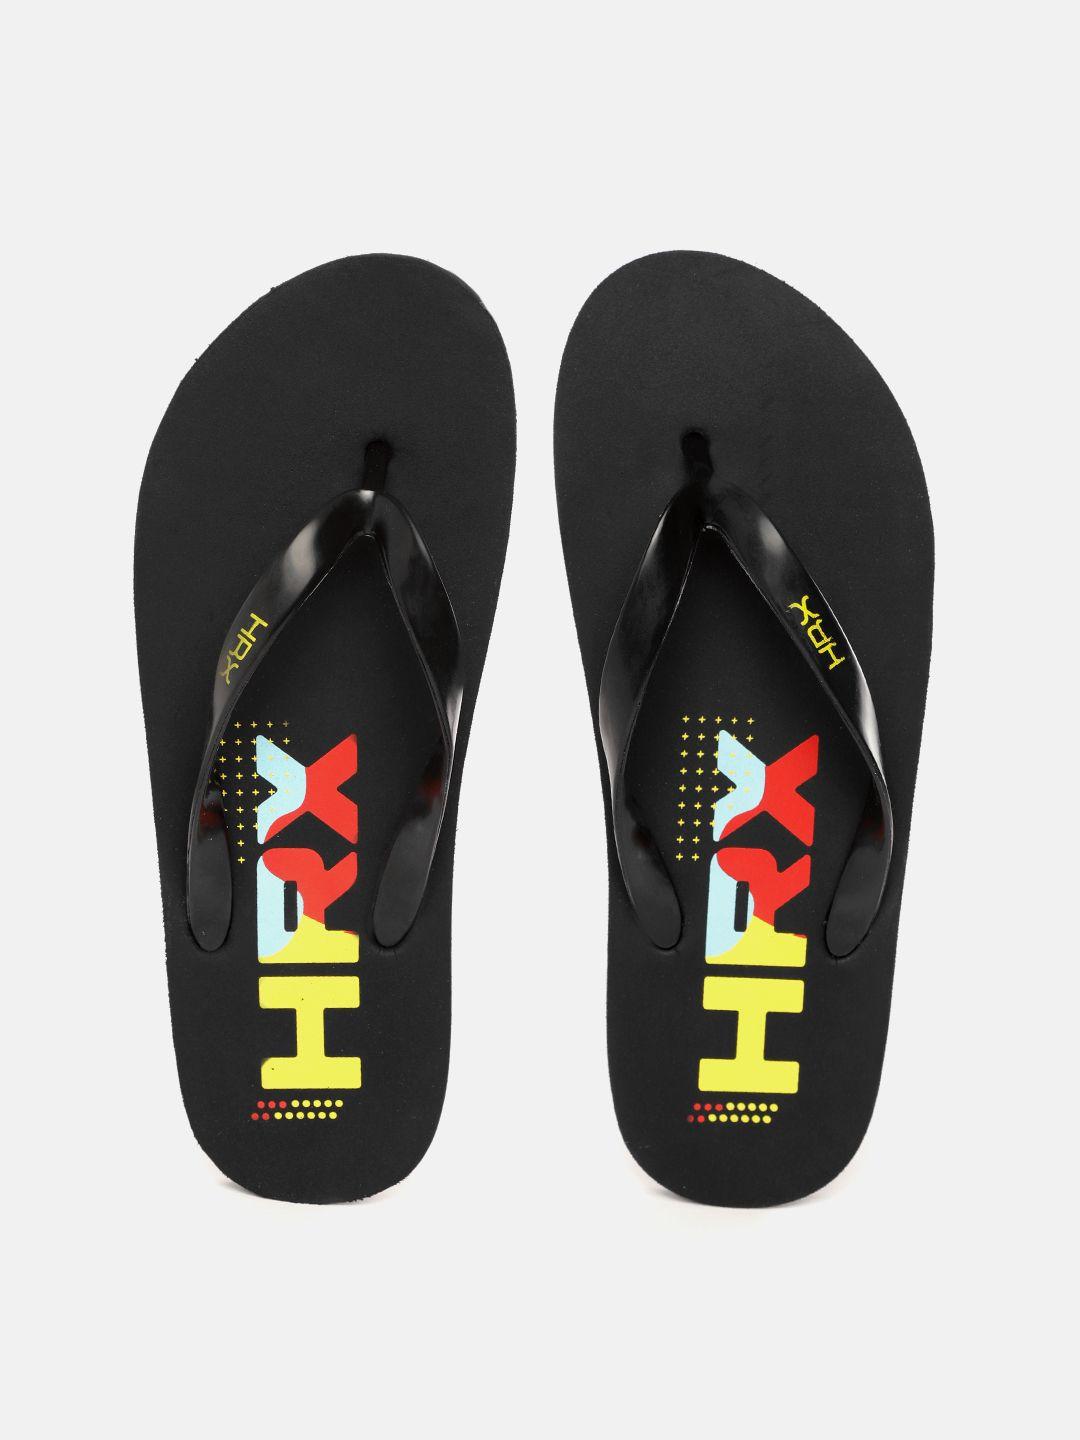 hrx by hrithik roshan men black & yellow brand logo printed thong flip-flops